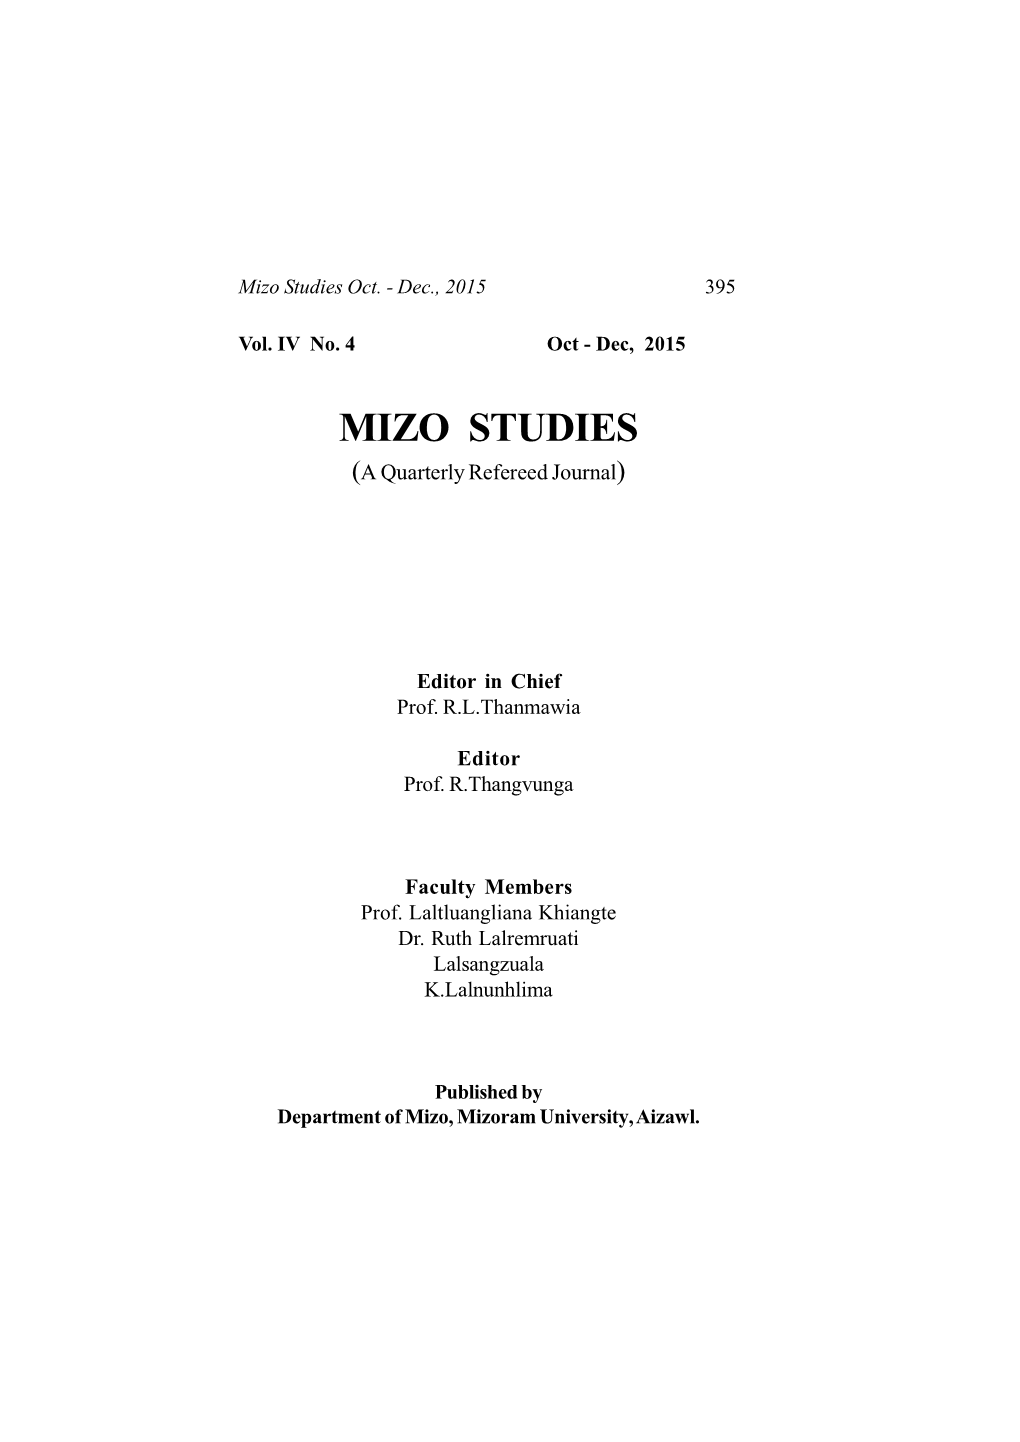 E:\Pendrive\Mizo Studies Vol. I